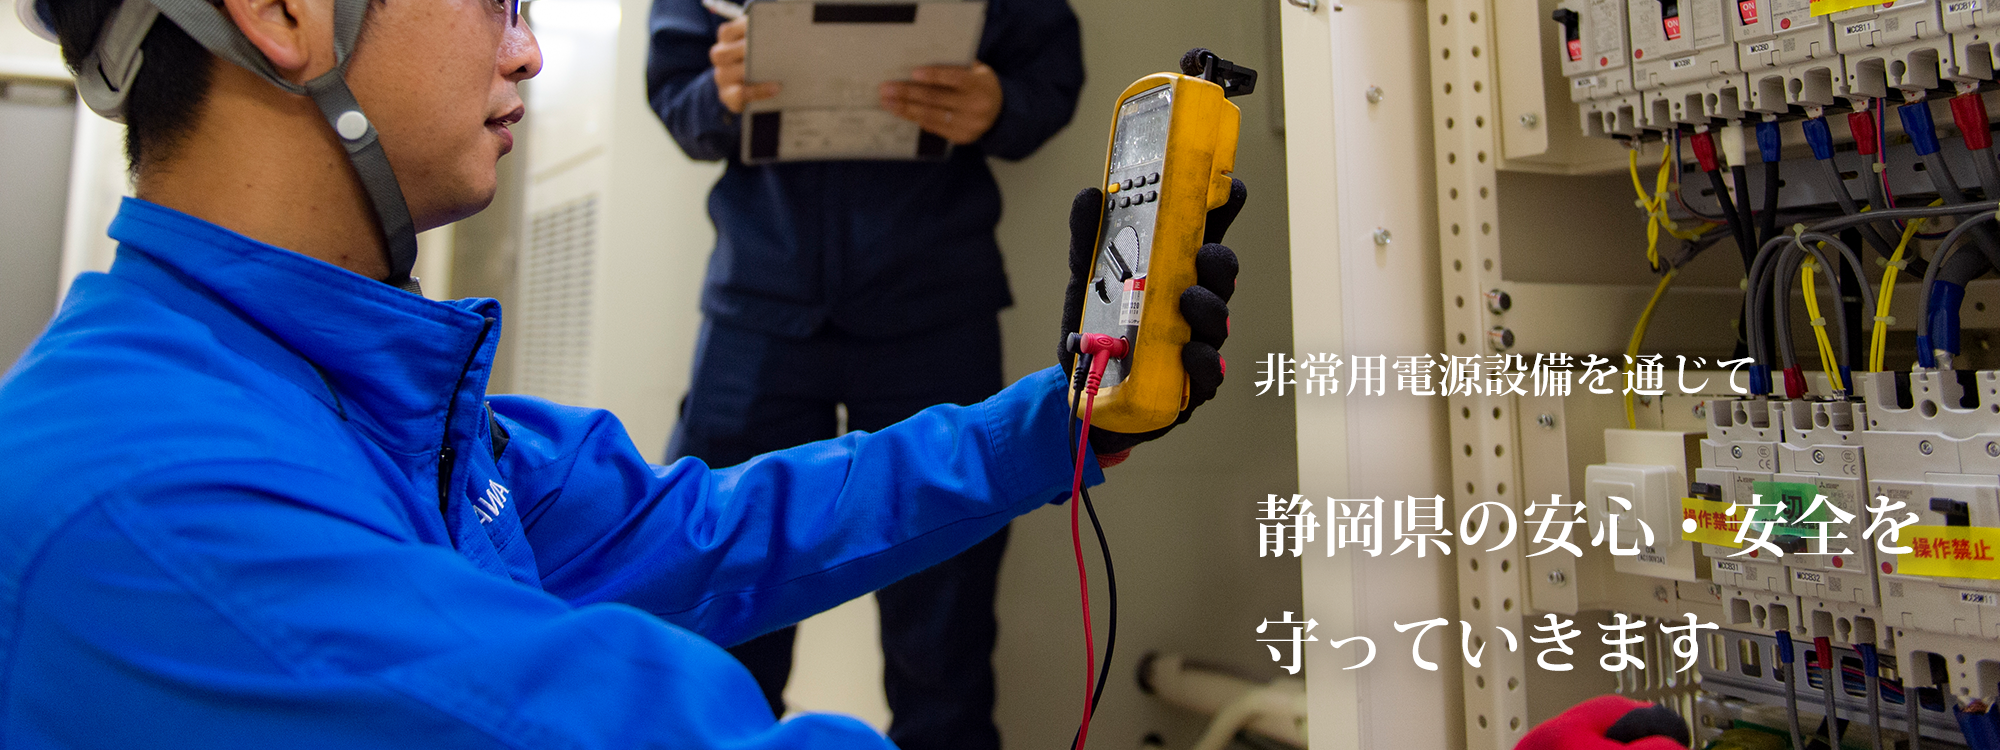 非常用電源設備を通じて、静岡県の安心・安全を守っていきます